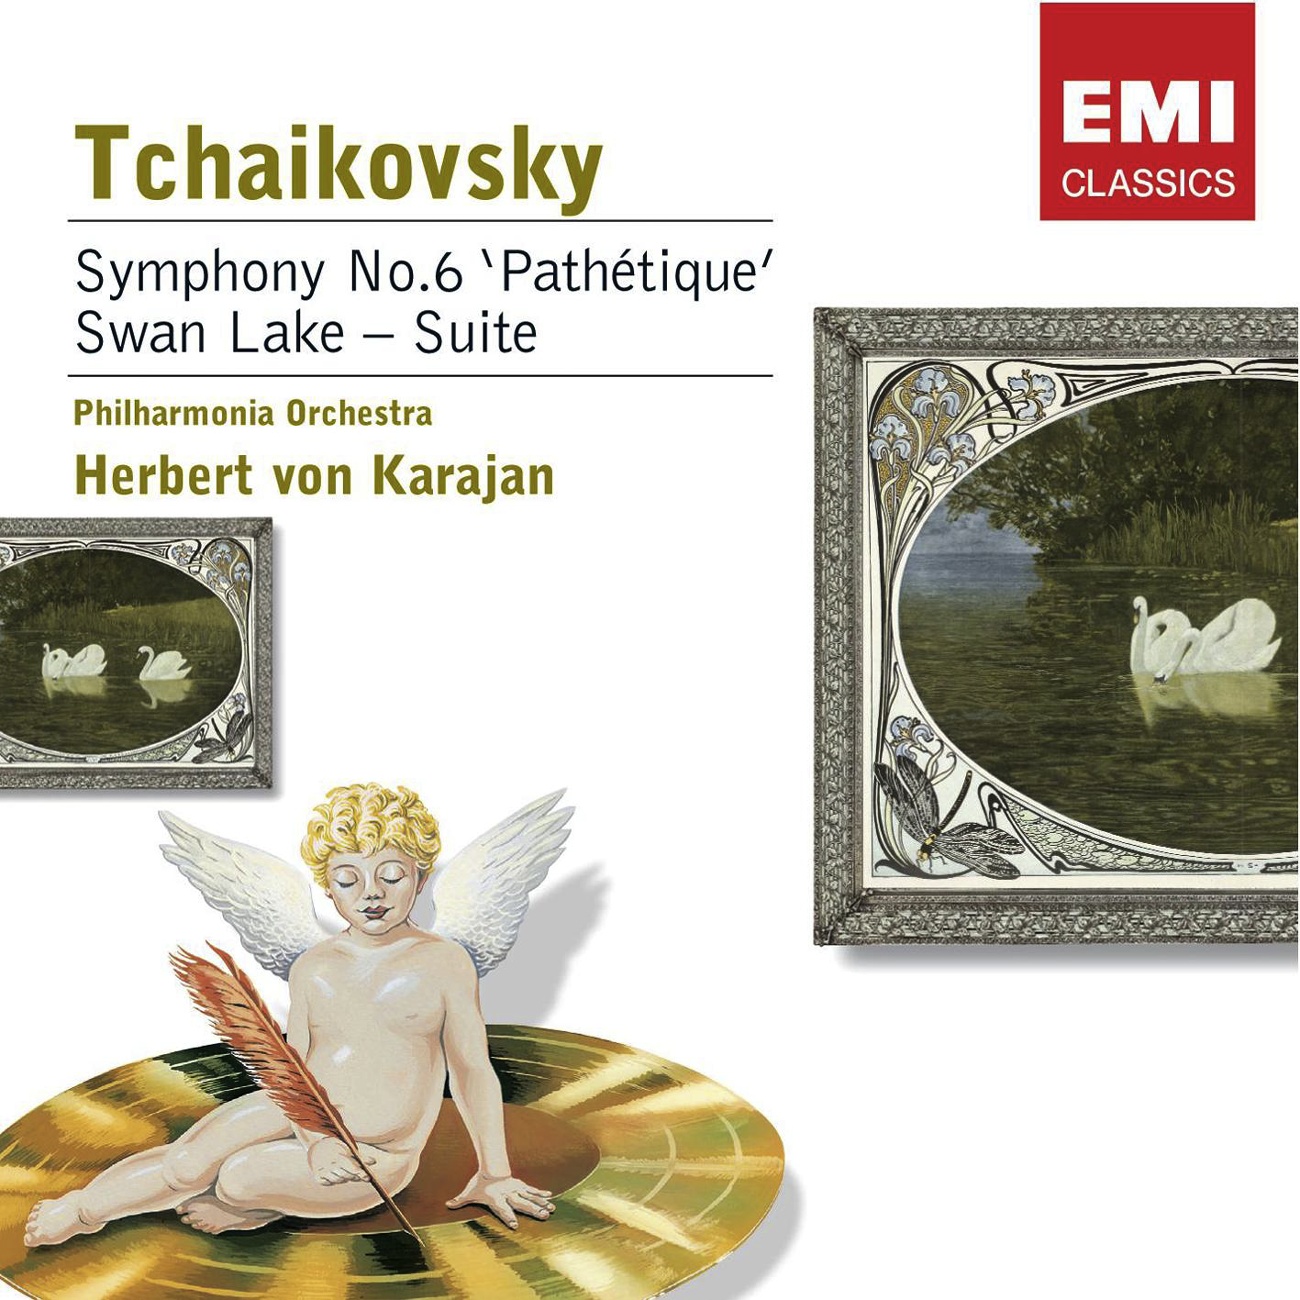 Symphony No. 6 in B minor, ' Pathe tique' Op. 74 2006 Digital Remaster: Adagio lamentoso